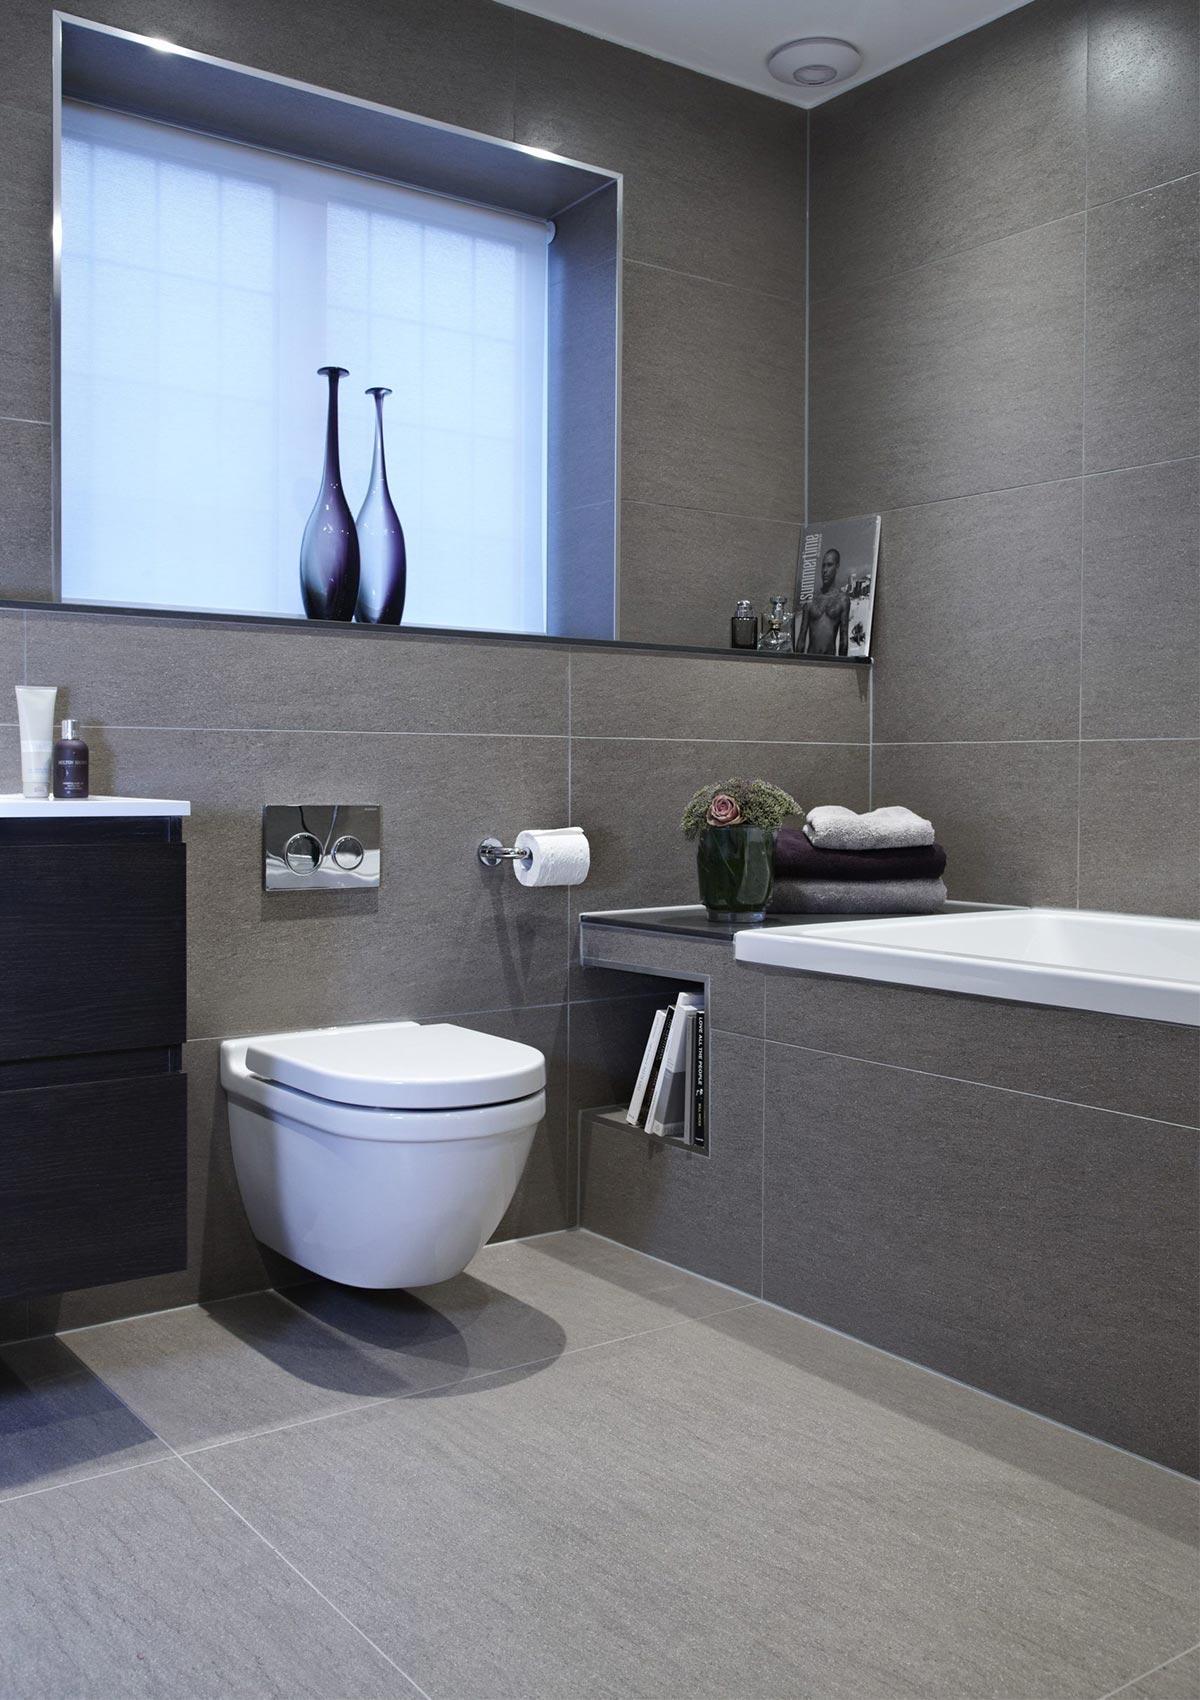 Thiết kế nội thất phòng tắm sử dụng tông màu trắng xám thanh bình